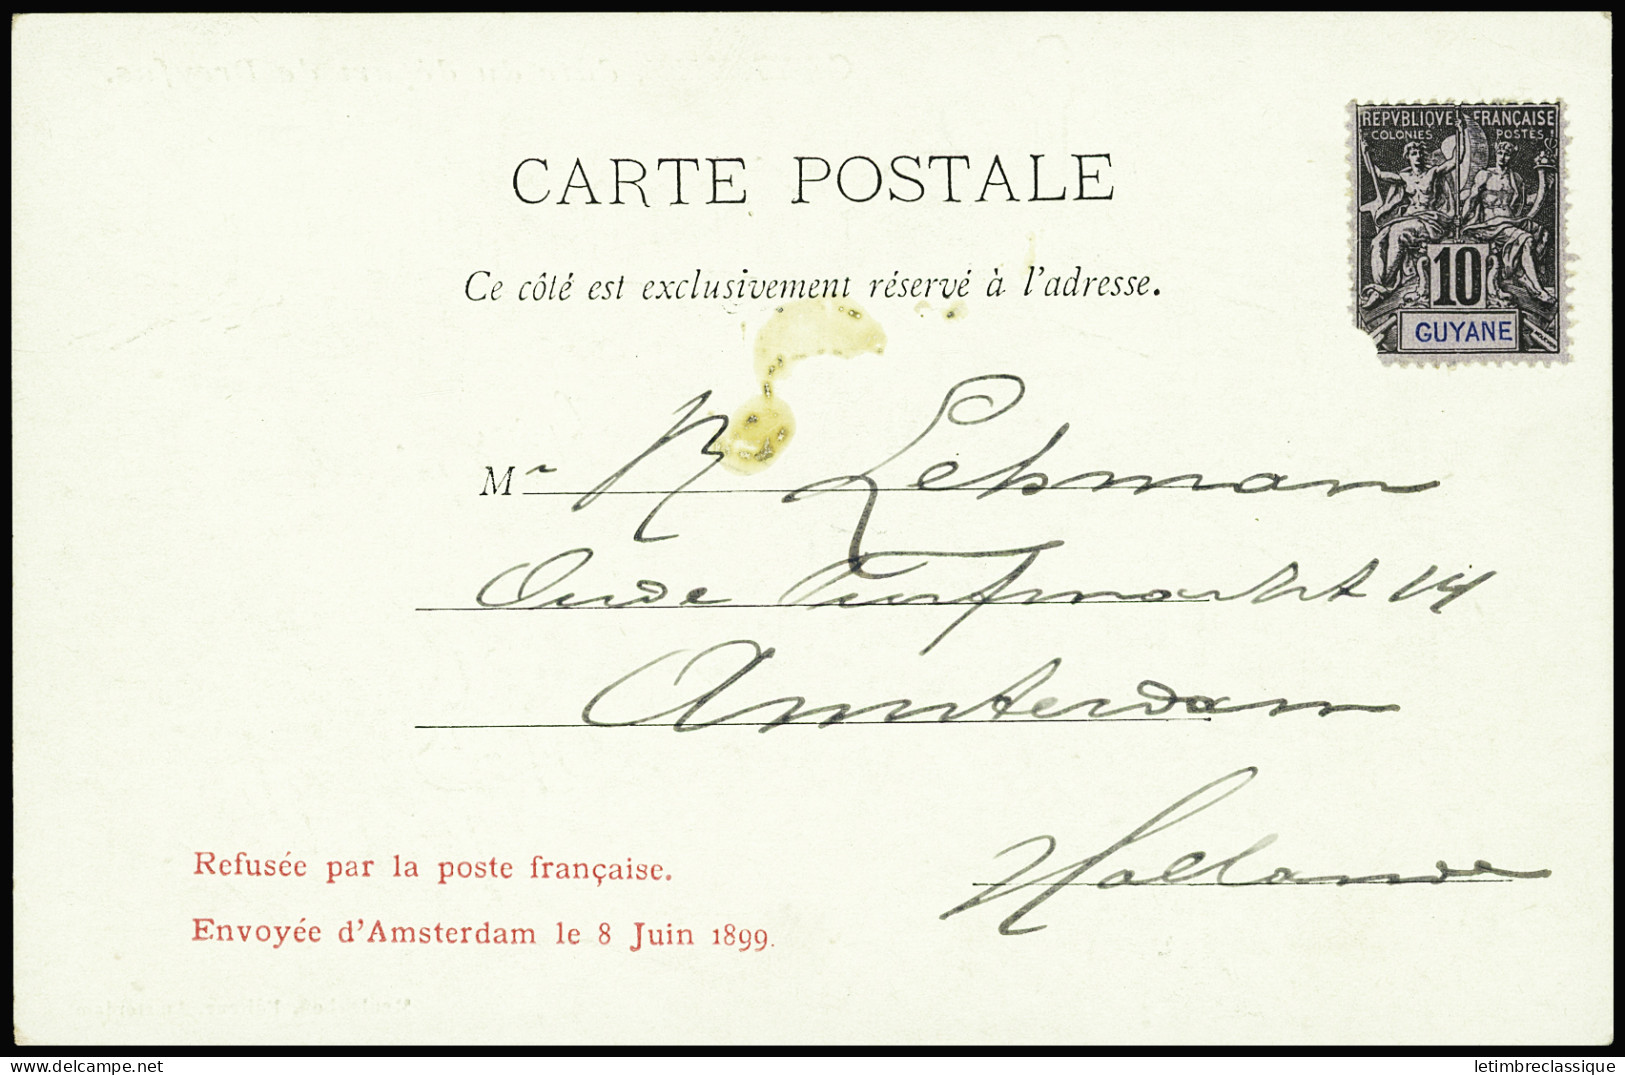 Lettre Italie n°58 sur bande de journal adressée au capitaine Alfred Dreyfus à la prison de Rennes avec cachet bleu de c